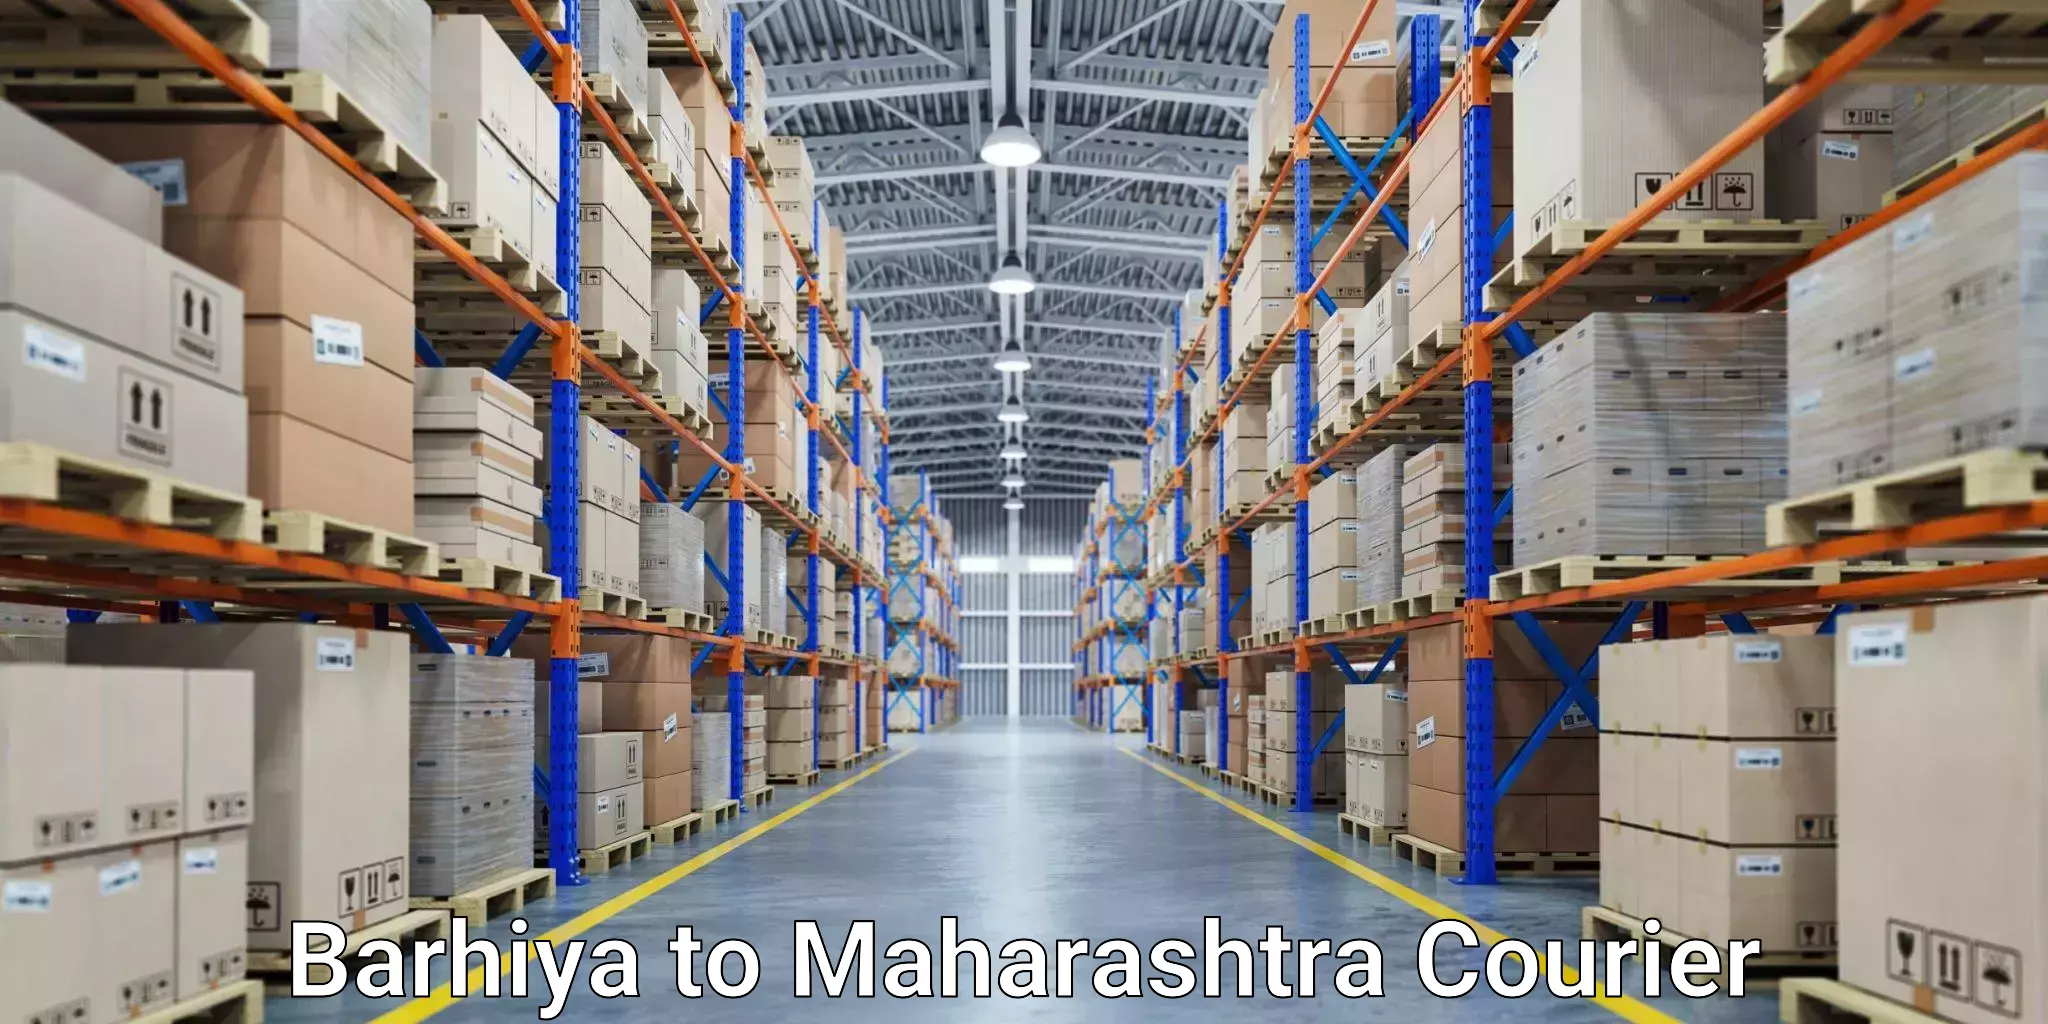 Business shipping needs Barhiya to Shirdi